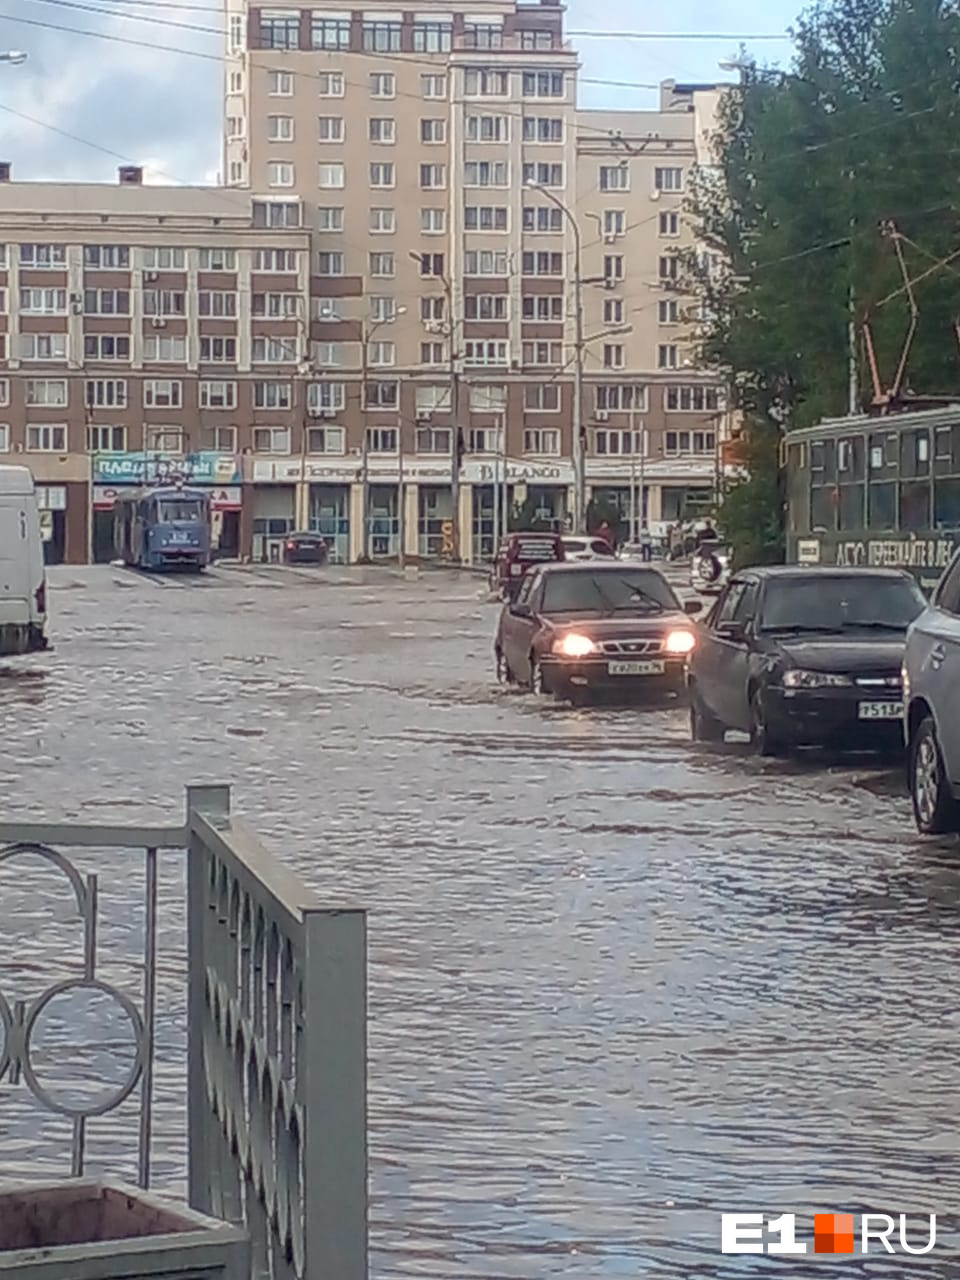 «Машины гудят, трамваи стоят». В Екатеринбурге из-за сильнейшего потопа парализовало движение